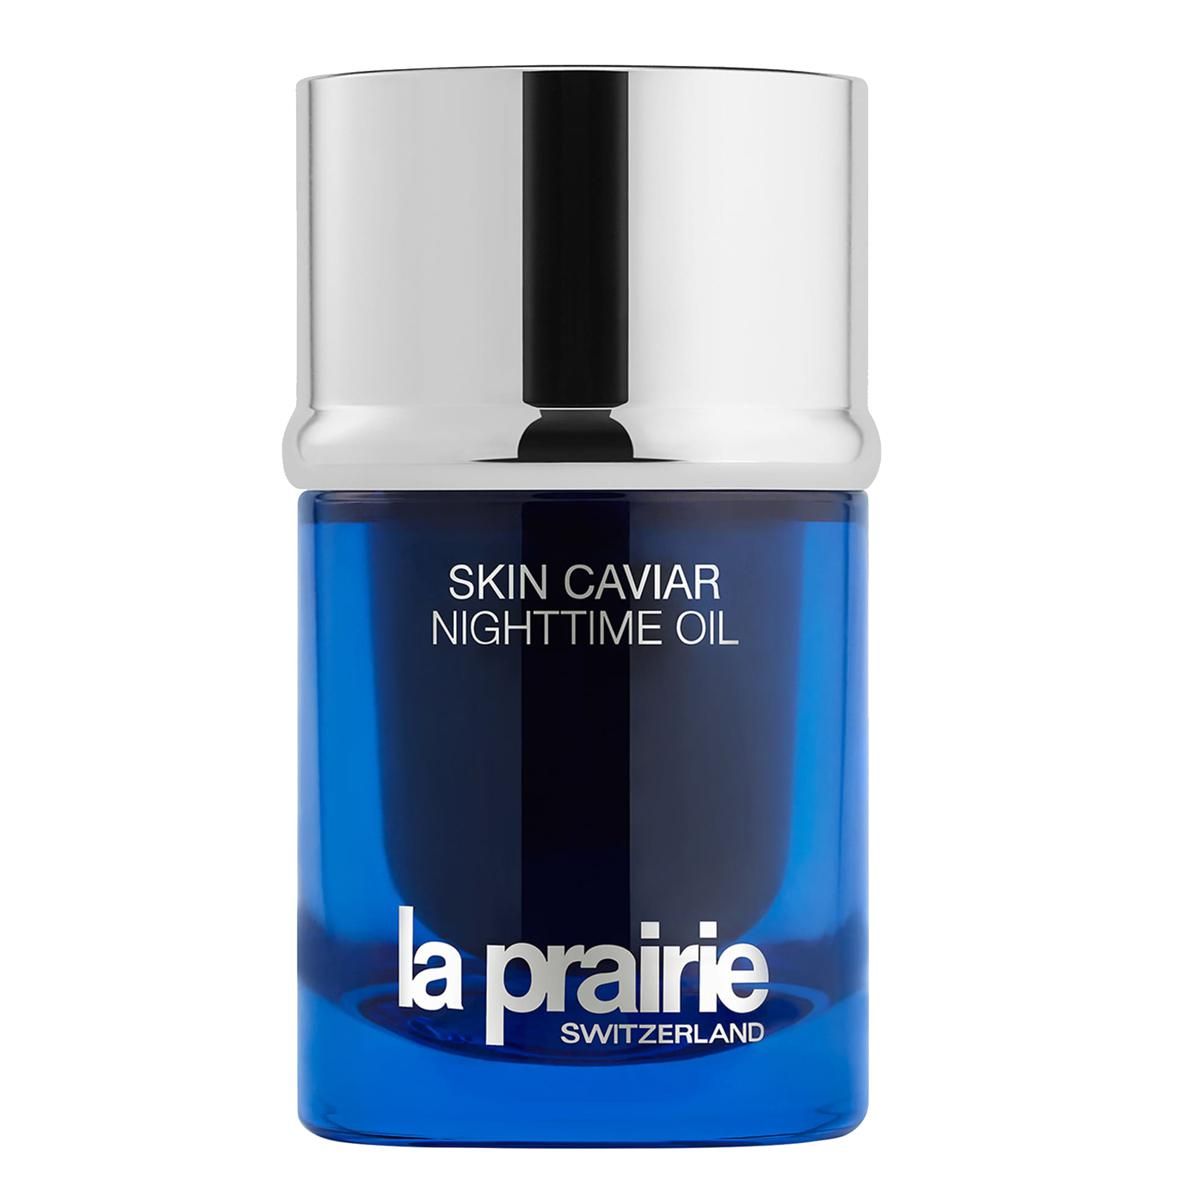 la prairie skin caviar nighttime oil